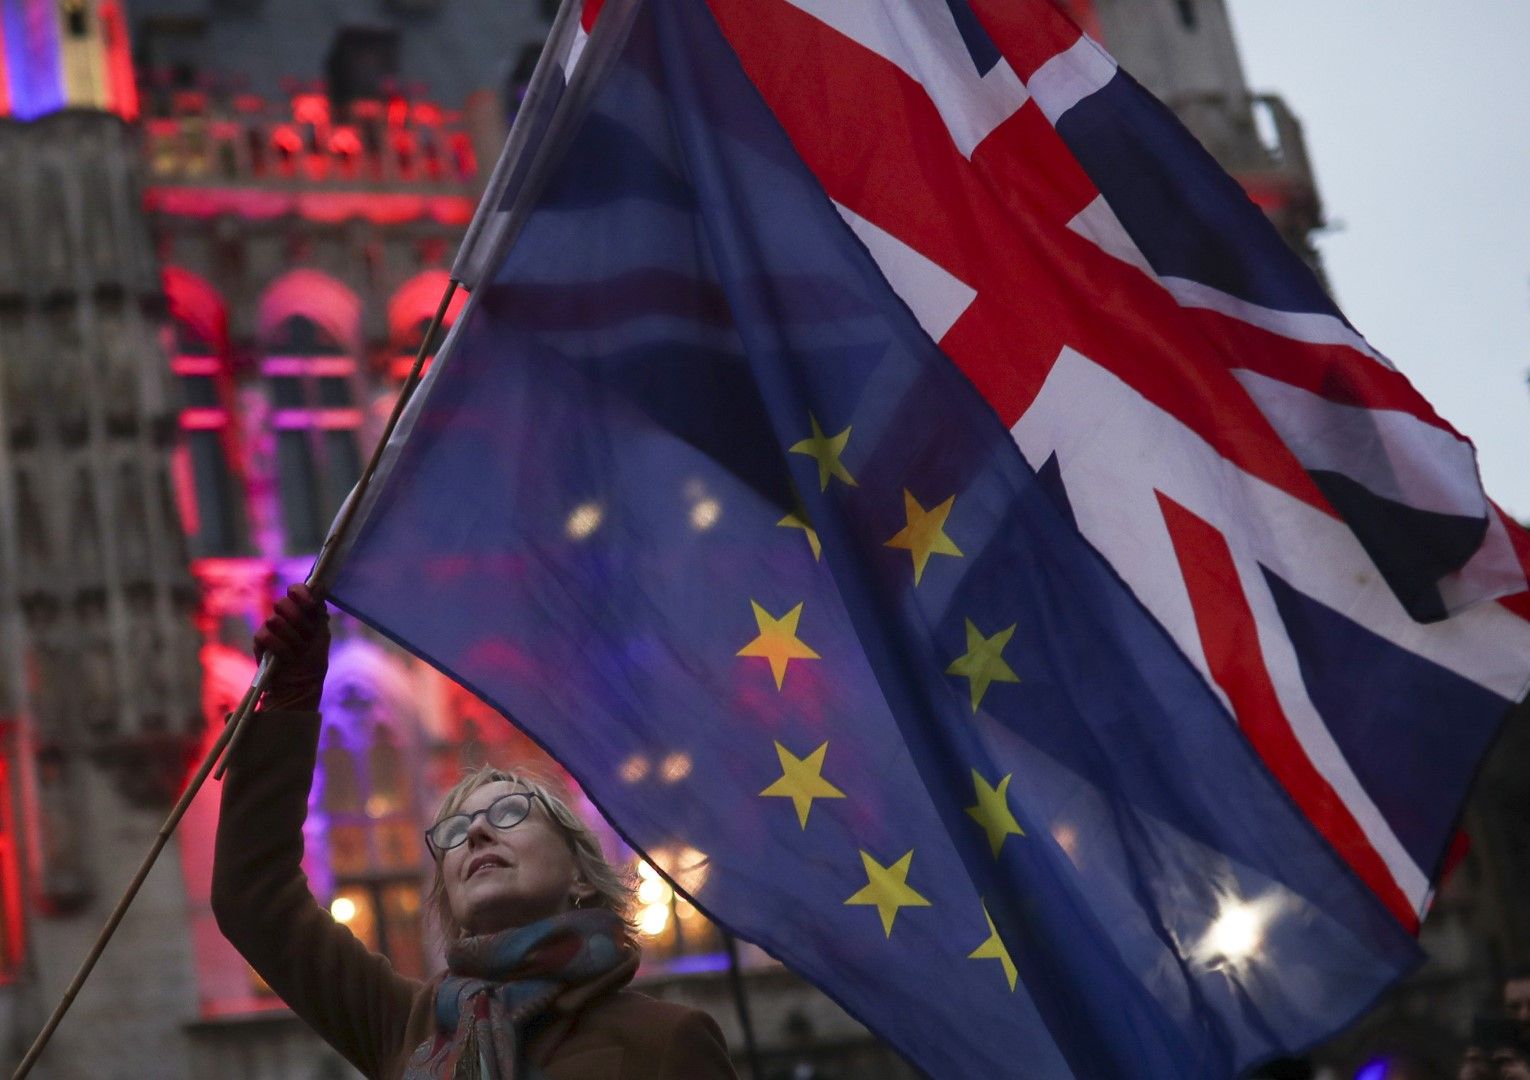 30 януари 2020 г. жена държи флаговете на Обединеното кралство и Европейския съюз по време на събитие в Брюксел. Броят на британците, които се преместват да живеят в страни от ЕС се покачи след вота за Brexit през 2016 г., съобщи британско-германско проуч